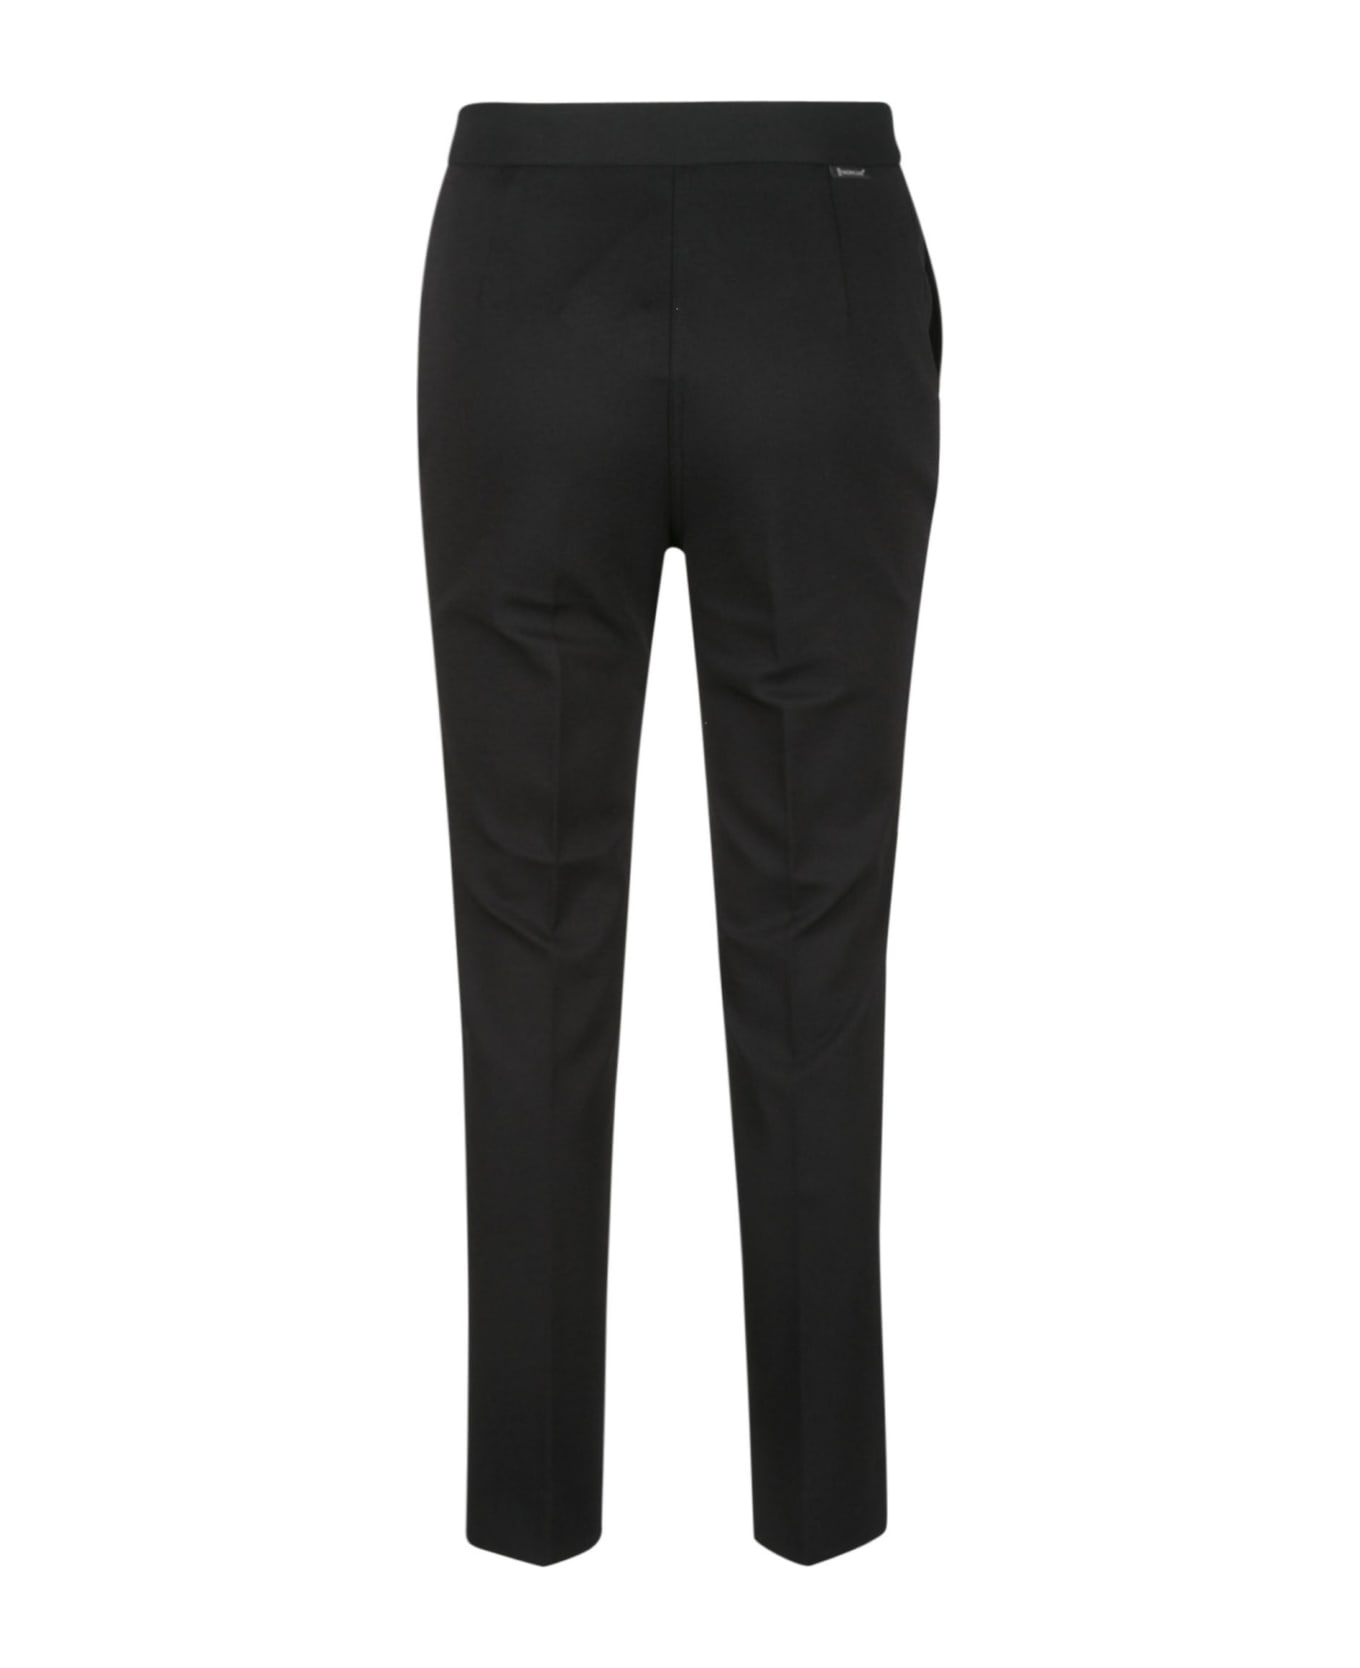 Moncler Regular Fit Plain Trousers - 999